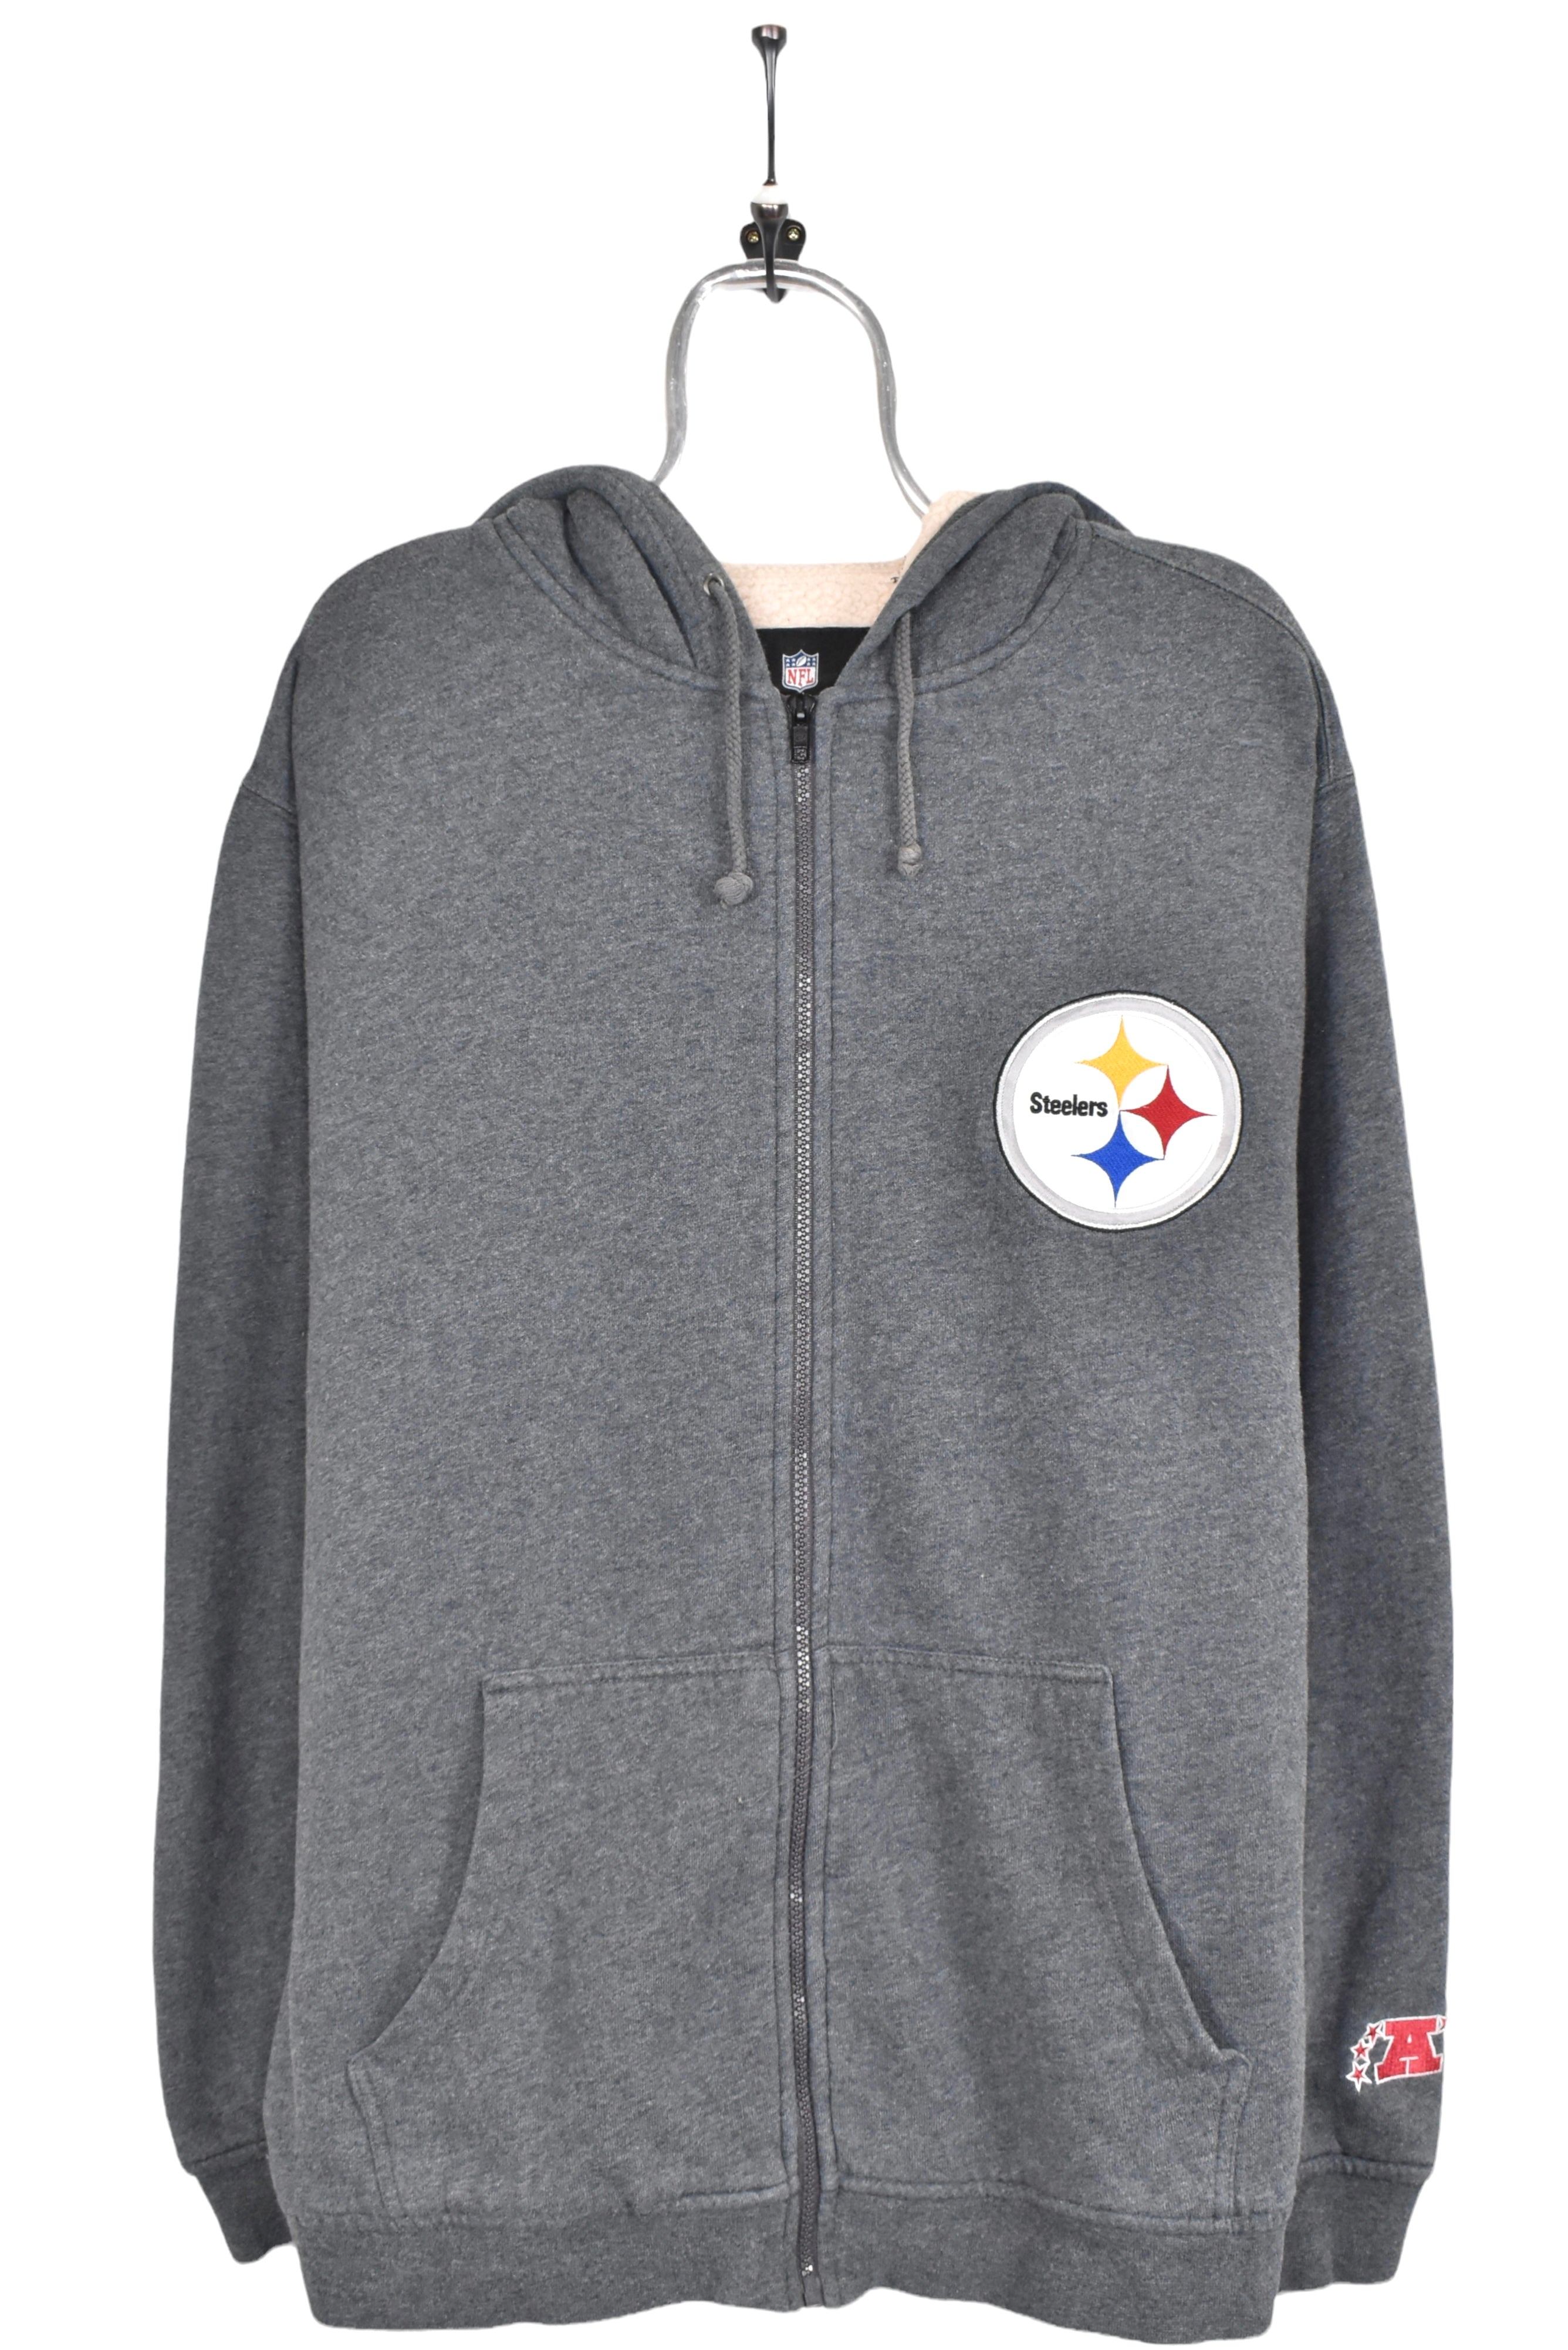 Vintage Pittsburgh Steelers hoodie, NFL grey embroidered heavy sweatshirt - AU XL PRO SPORT